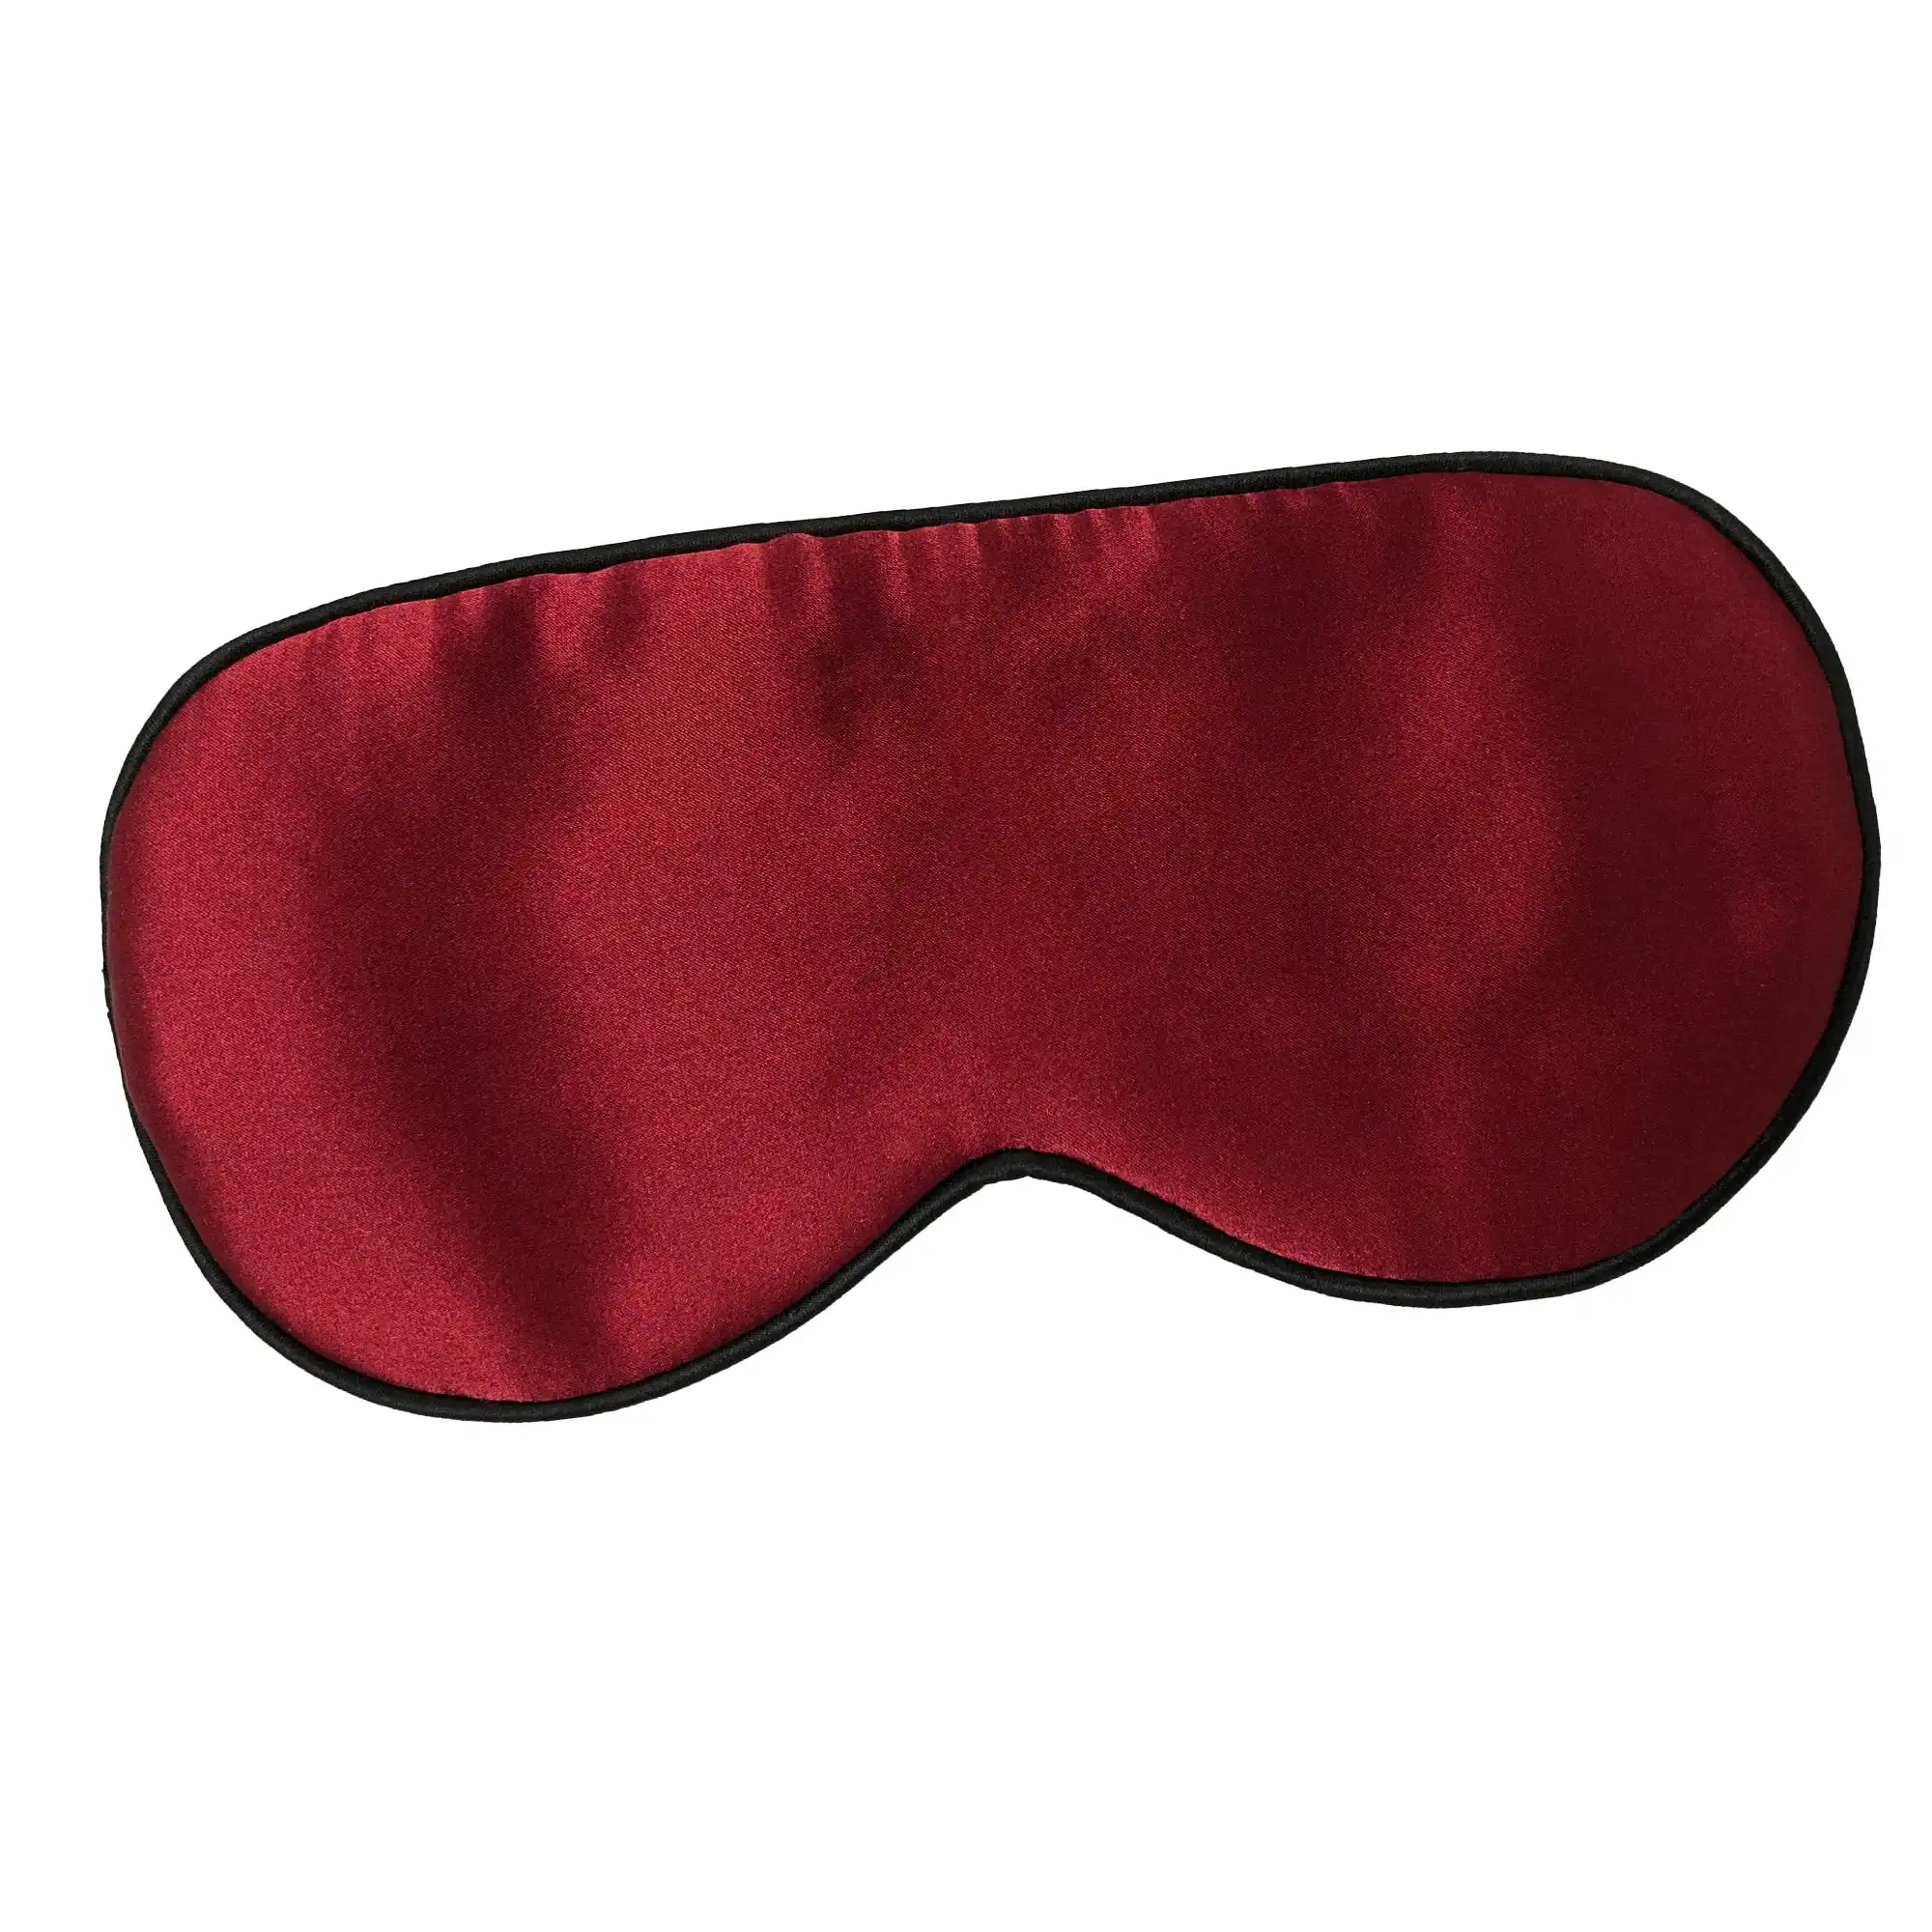 Softouch 100% Silk Eyeshade Sleep Eye Mask Cover Blindfold For Women Men